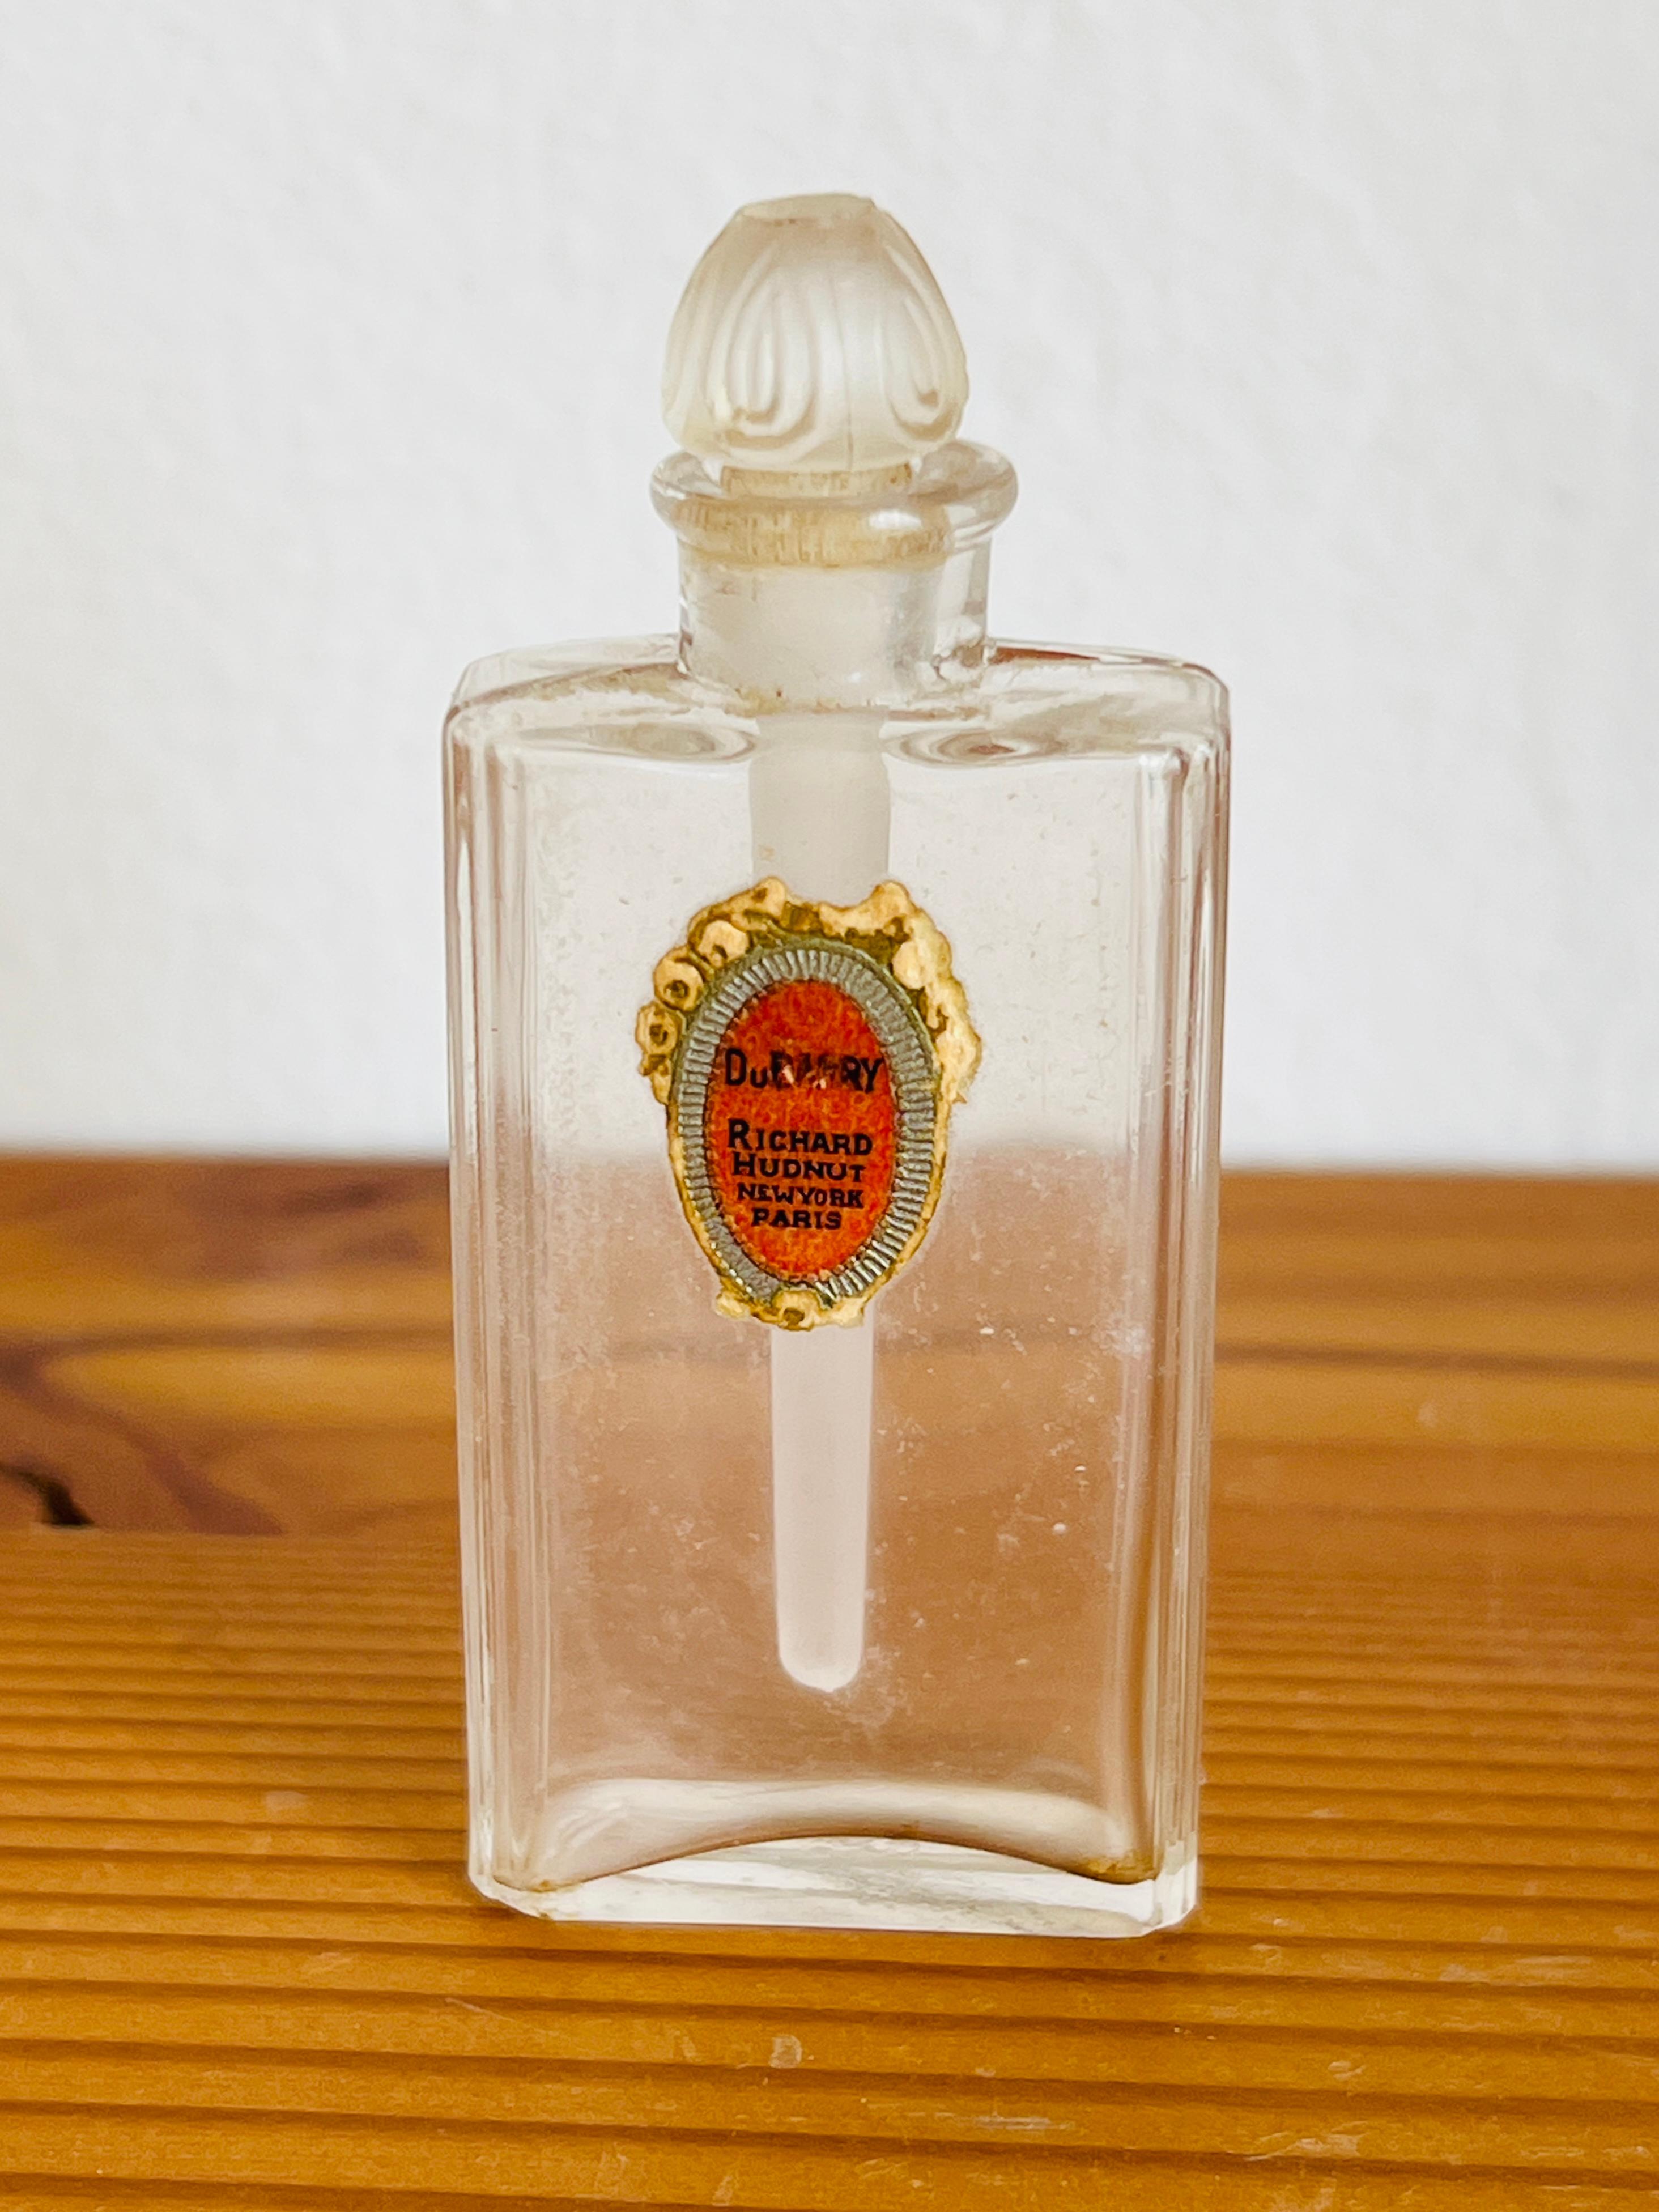 Ce flacon de parfum miniature très rare contenait autrefois le parfum Dubarry de Richard Heldly. 

Taille : 2-1/4